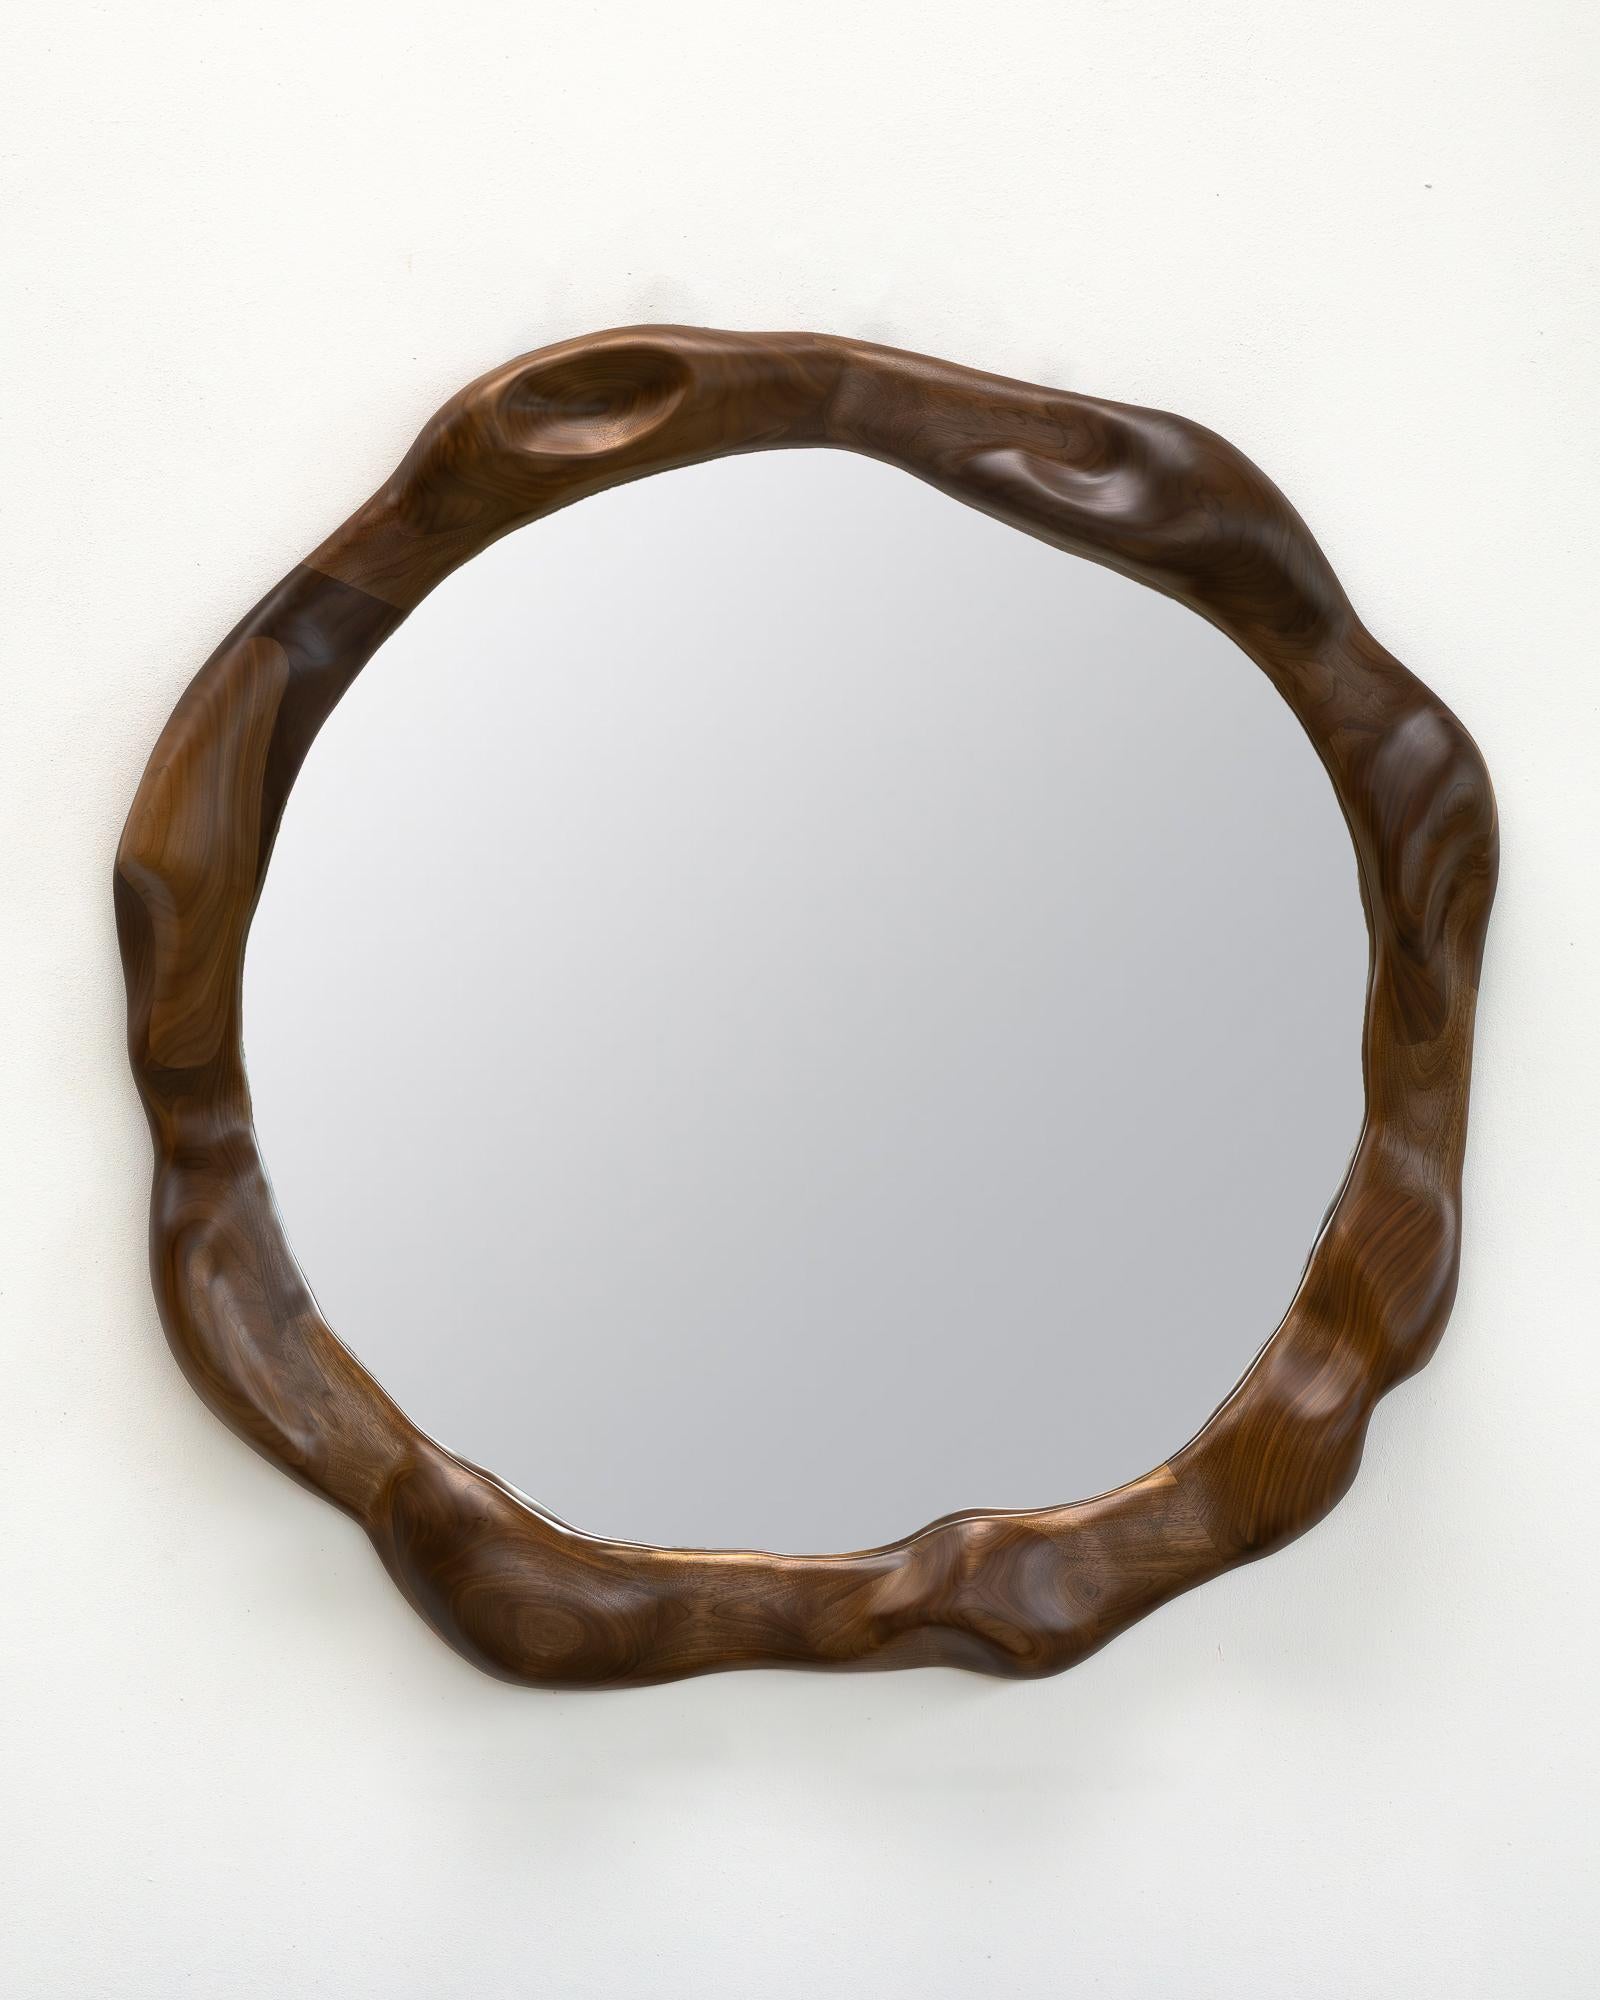 Der Rahmen des Spiegels wird mit verschiedenen Handwerkzeugen geformt, so dass jedes Stück ein Unikat mit seiner eigenen, unverwechselbaren Holzmaserung ist. Er ist aus hochwertigem Nussbaumholz gefertigt und mit einem Hartwachsöl behandelt. 

Der